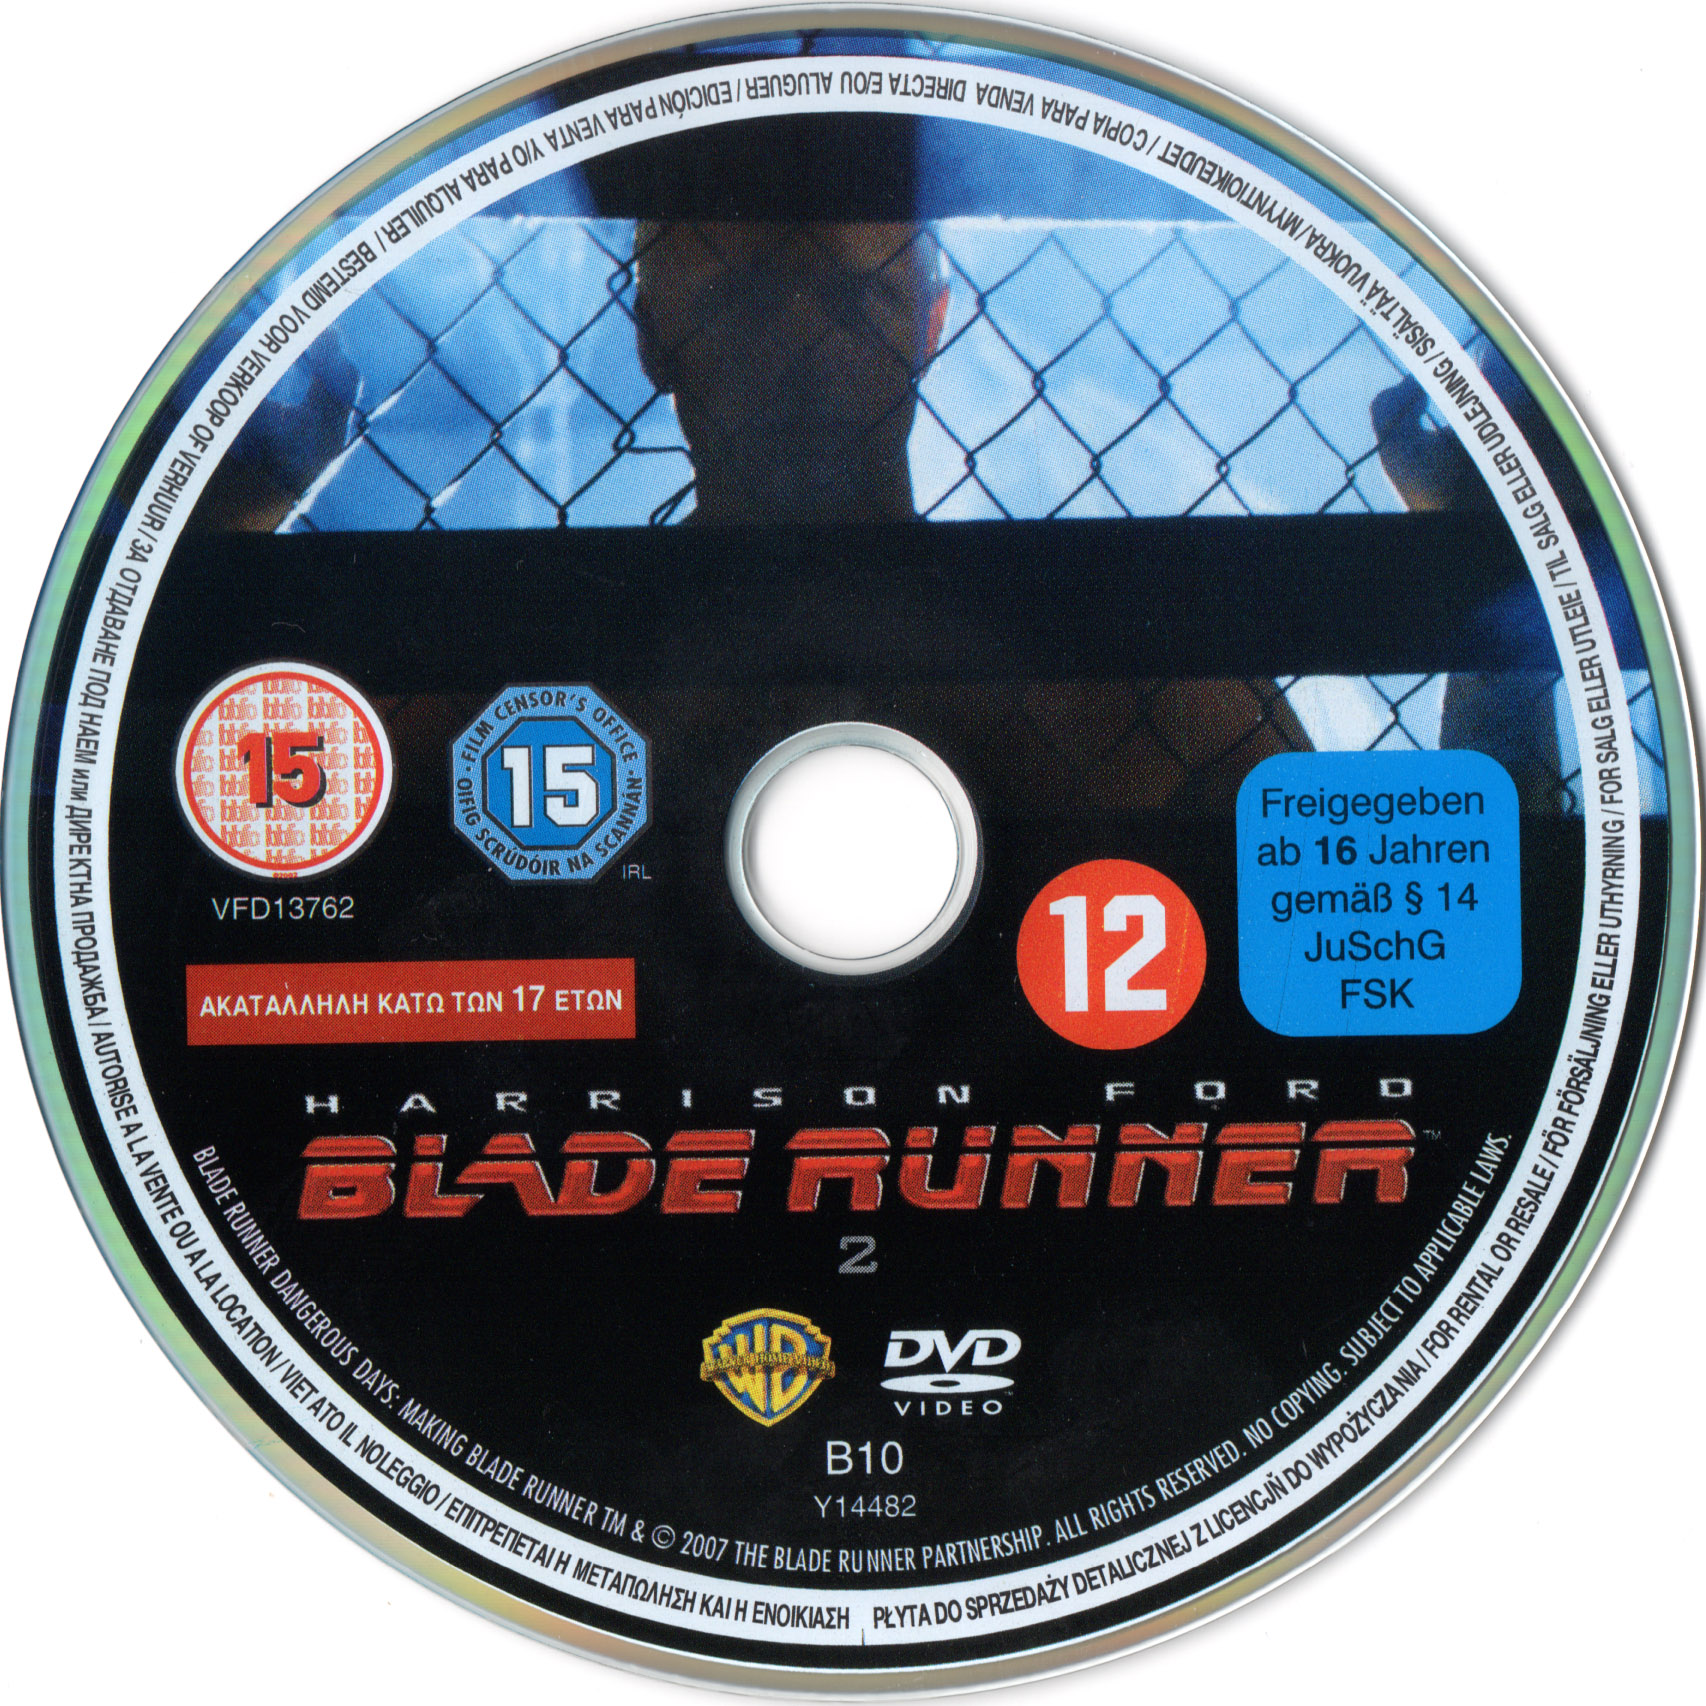 Blade runner DISC 2